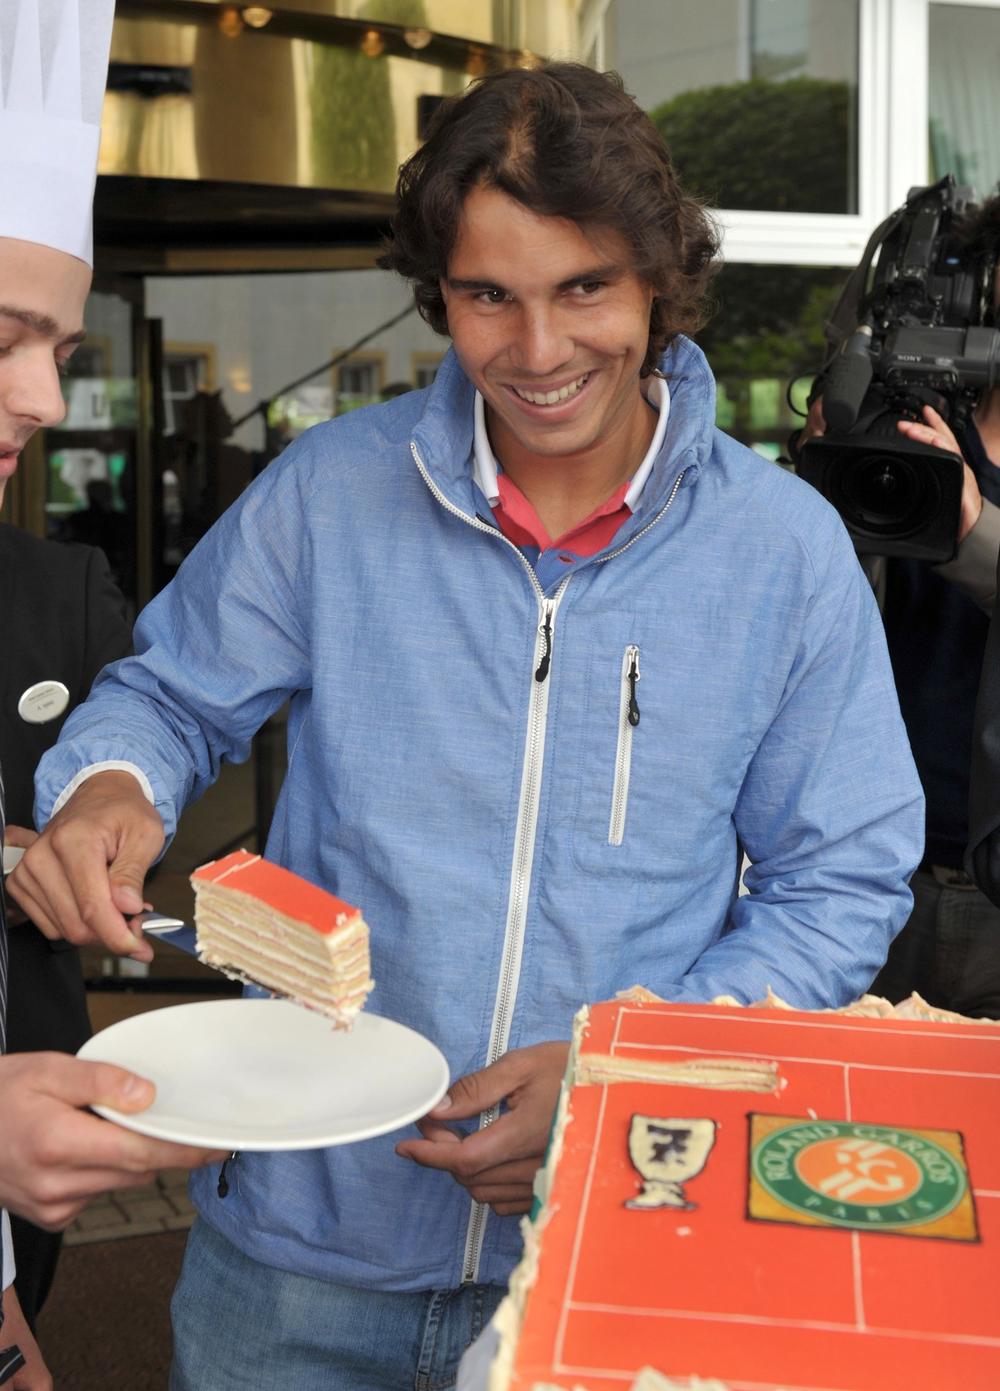 <p>Španski teniser <strong>Rafael Nadal </strong>3. juna proslavlja 31. rođendan. Poznat po izvanrednoj kondiciji, nije mu teško da održava kvalitet igre na zavidnom nivou i posle nekoliko sati borbe. Osim kao sjajan sportista, oprobao se i kao model rame uz rame sa <strong>Megan</strong> <strong>Foks </strong>u Armanijevom donjem rublju. Mladi <strong>Rafa </strong>čini se već ima sve. On uživa ogromnu popularnost, bogatstvo i sreću, a sve to zahvaljujući napornom trudu i radu.</p>